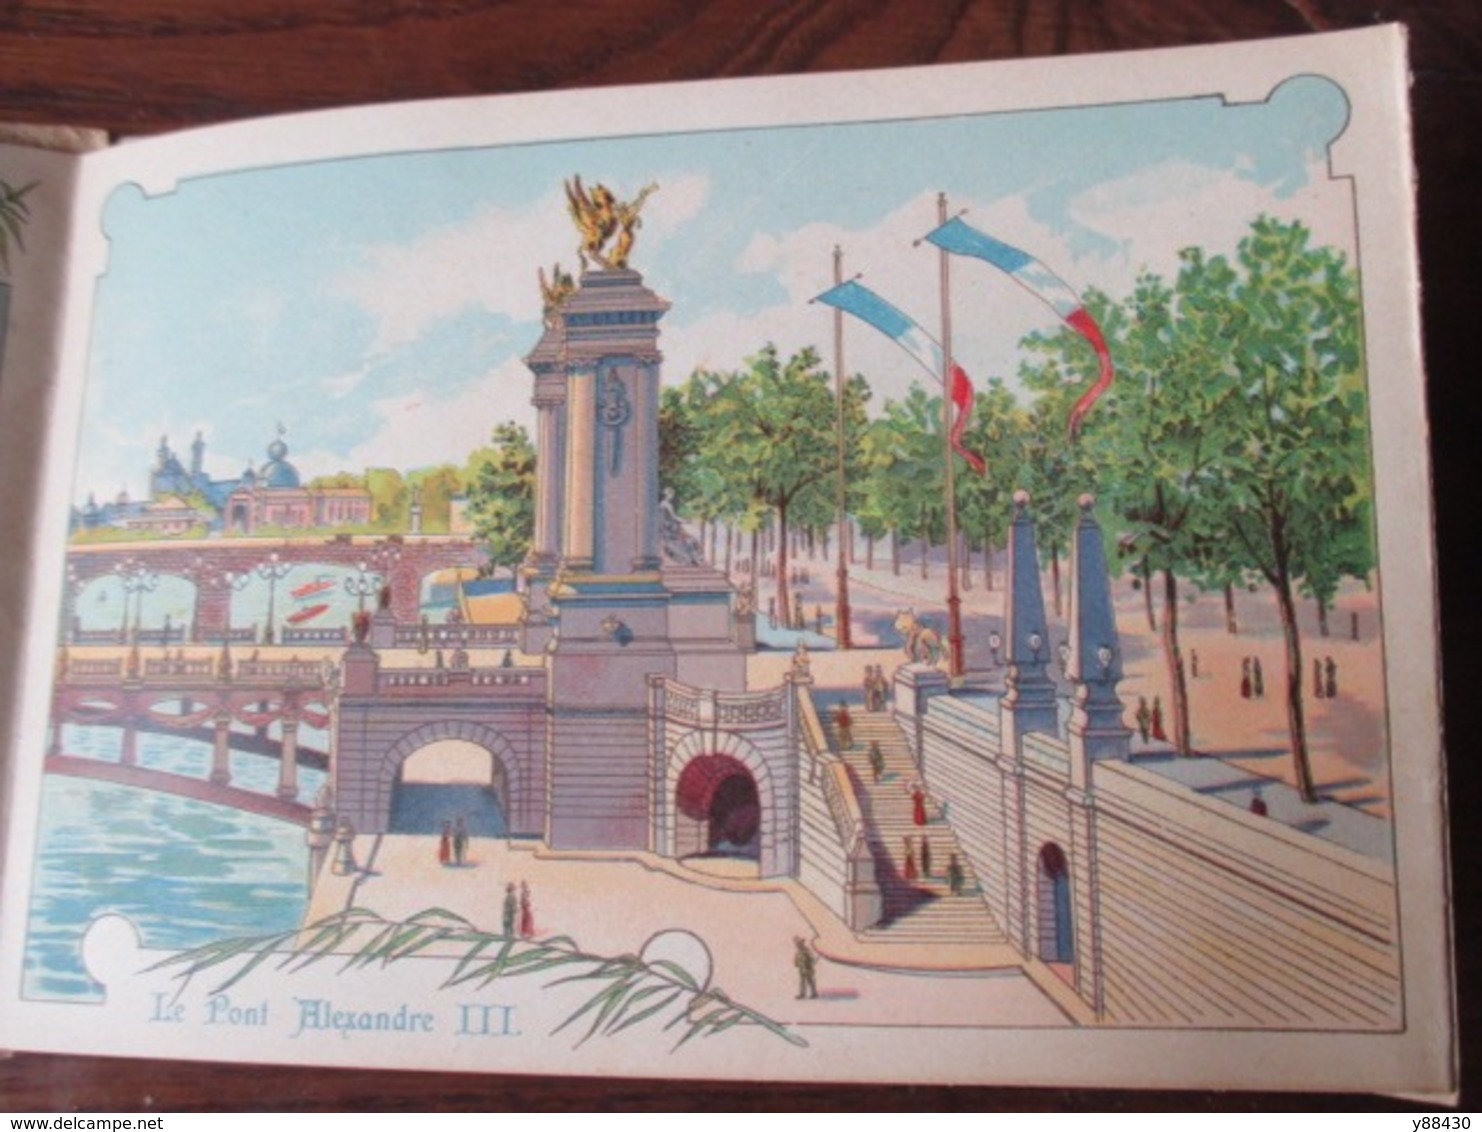 PARIS 1900 - Exposition Universelle de PARIS 1900 - Livret avec 11 photos couleur des Monuments de l'Expo - 13 photos